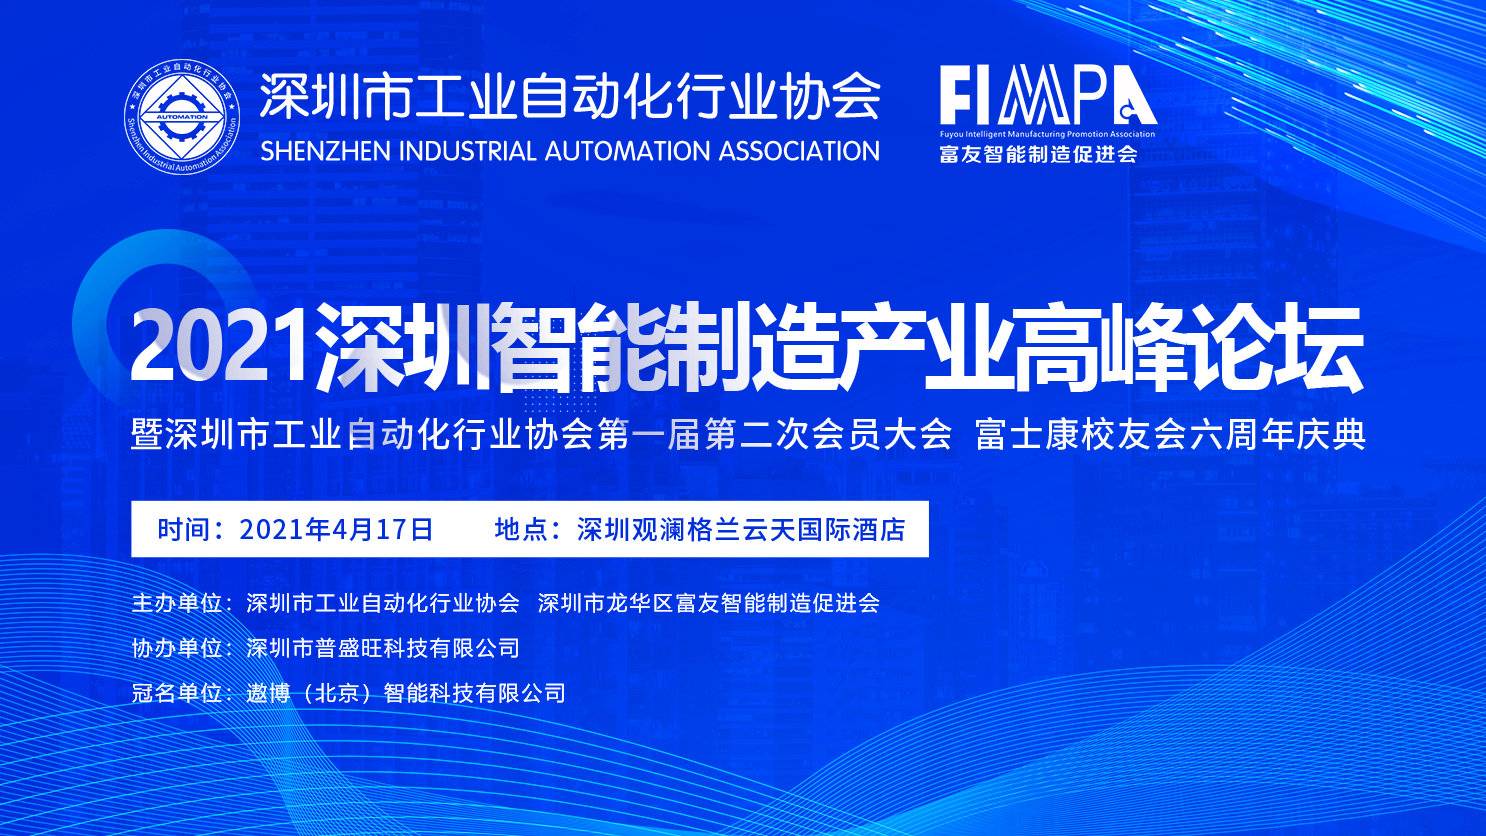 9570金沙登录入口出席深圳市工业自动化行业协会2021智能制造产业高峰论坛暨首届二次会员大会